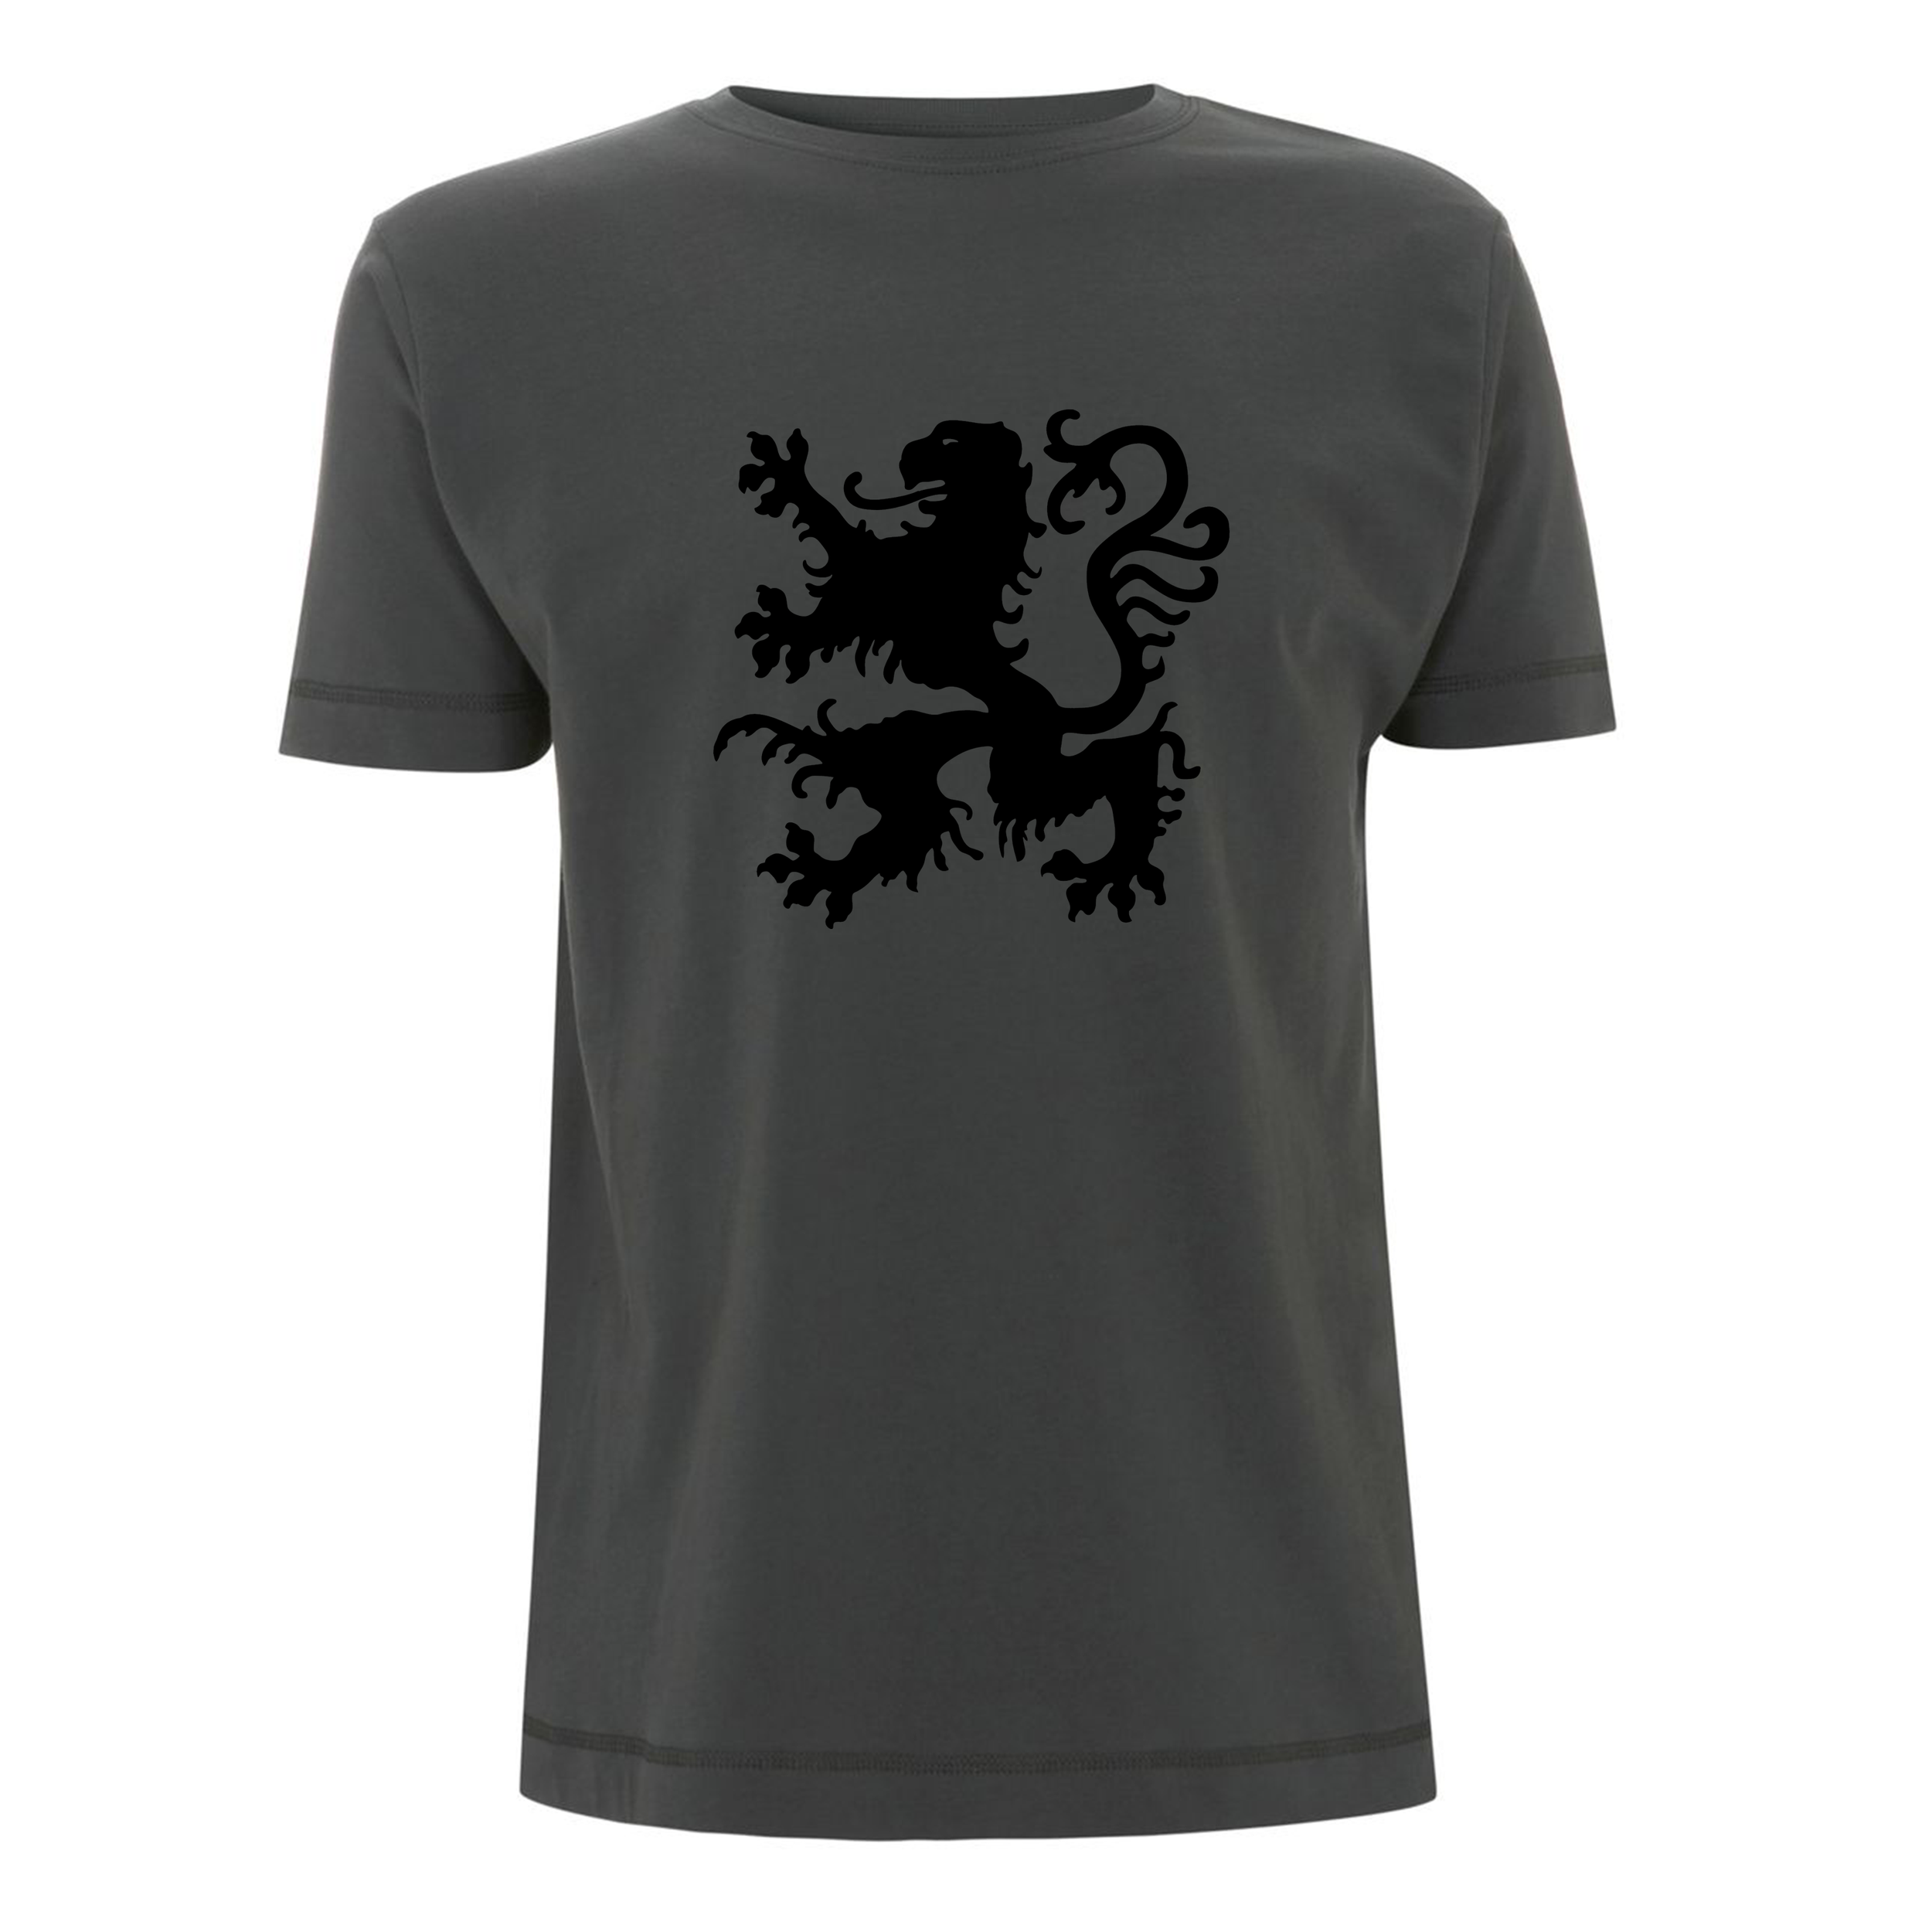 T-shirts: Charcoal Lion T-Shirt from Slanj Kilts